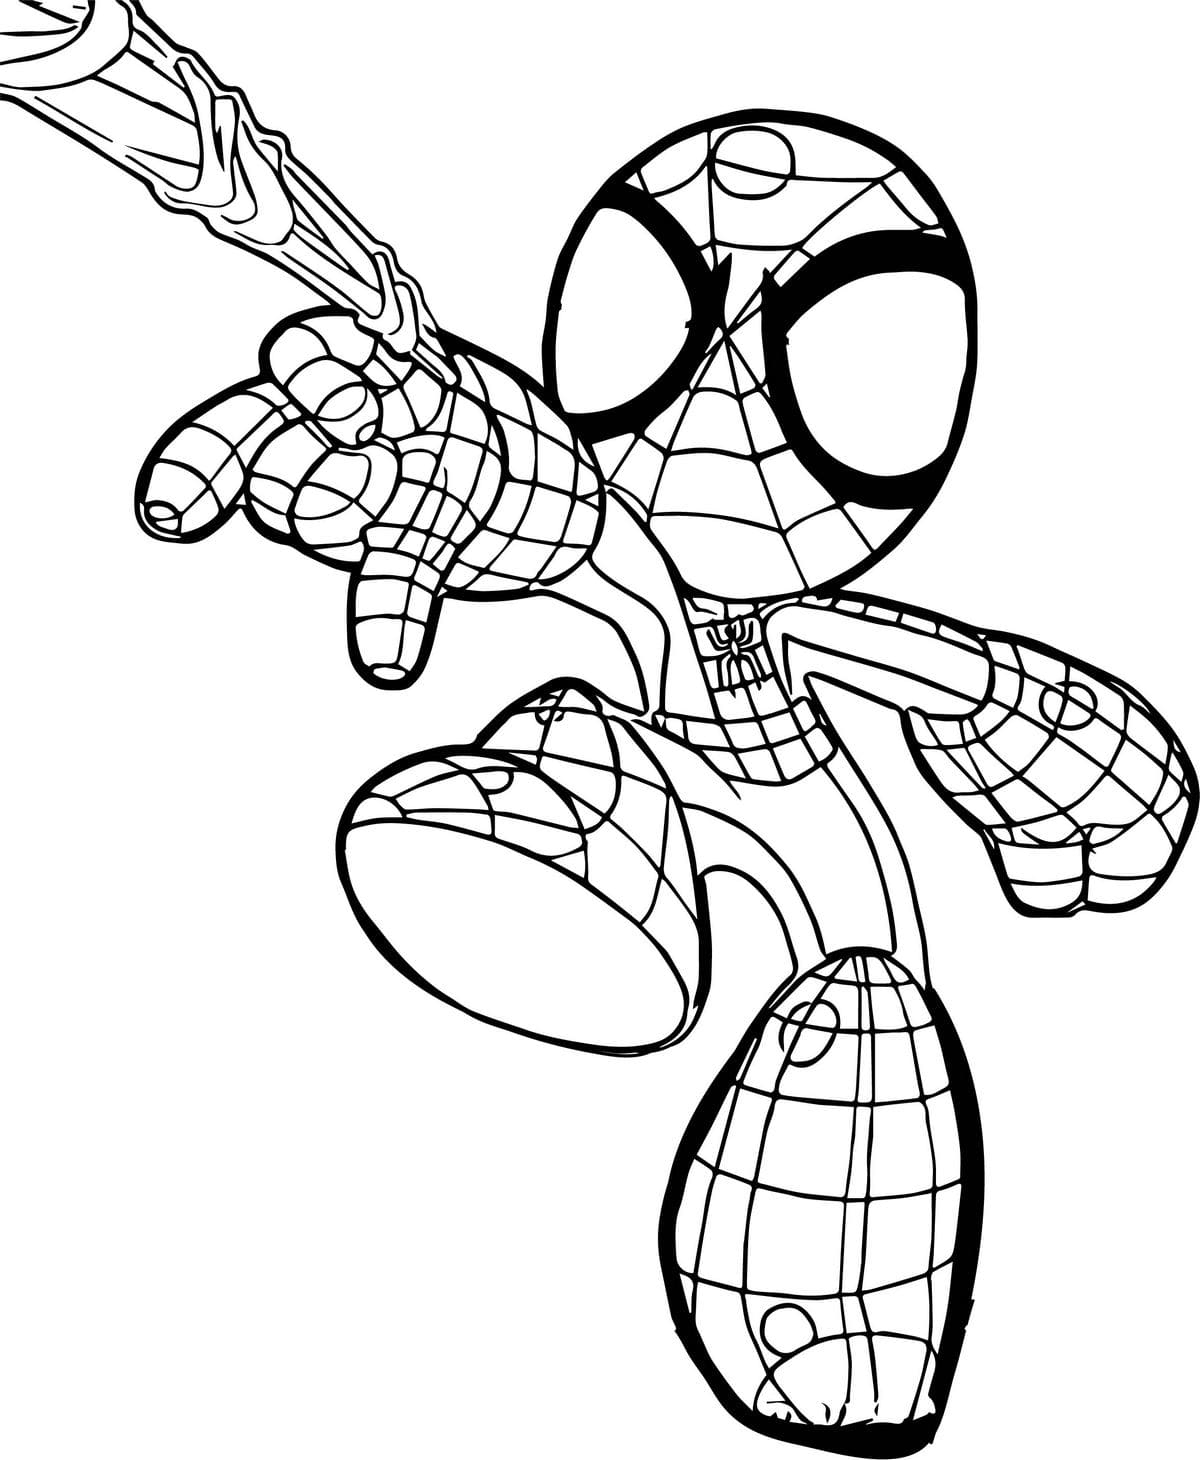 Coloriages Spiderman À Imprimer - Wonder-Day intérieur Coloriage Spider Man A Imprimer